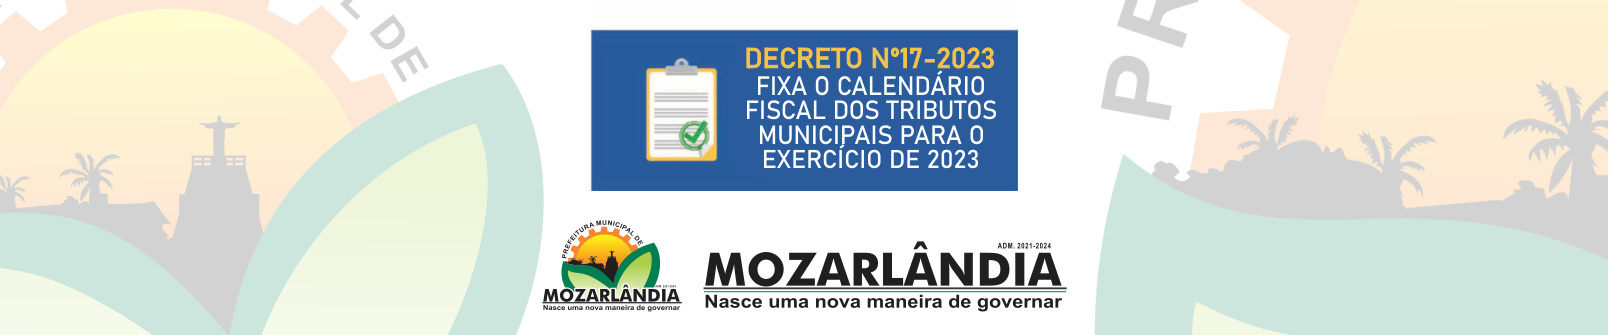 DECRETO Nº17-2023 – FIXA O CALENDÁRIO FISCAL DOS TRIBUTOS MUNICIPAIS PARA O EXERCÍCIO DE 2023 E DÁ OUTRAS PROVIDÊNCIAS.